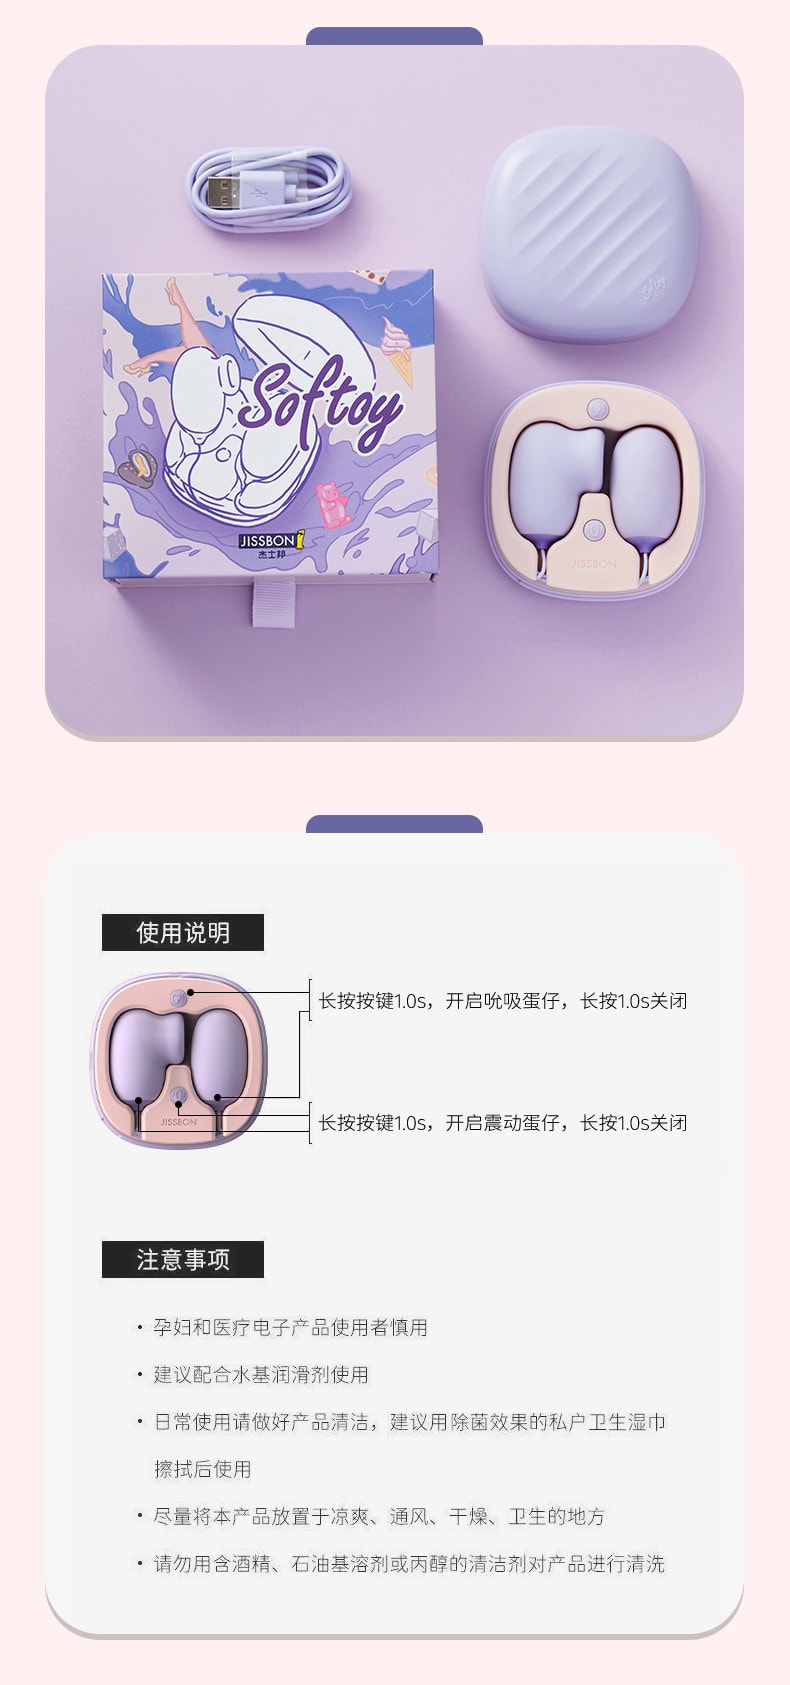 【中国直邮】杰士邦 Softoy系列 小粉饼双线双跳蛋 情趣用品  香芋紫色吮吸震动款